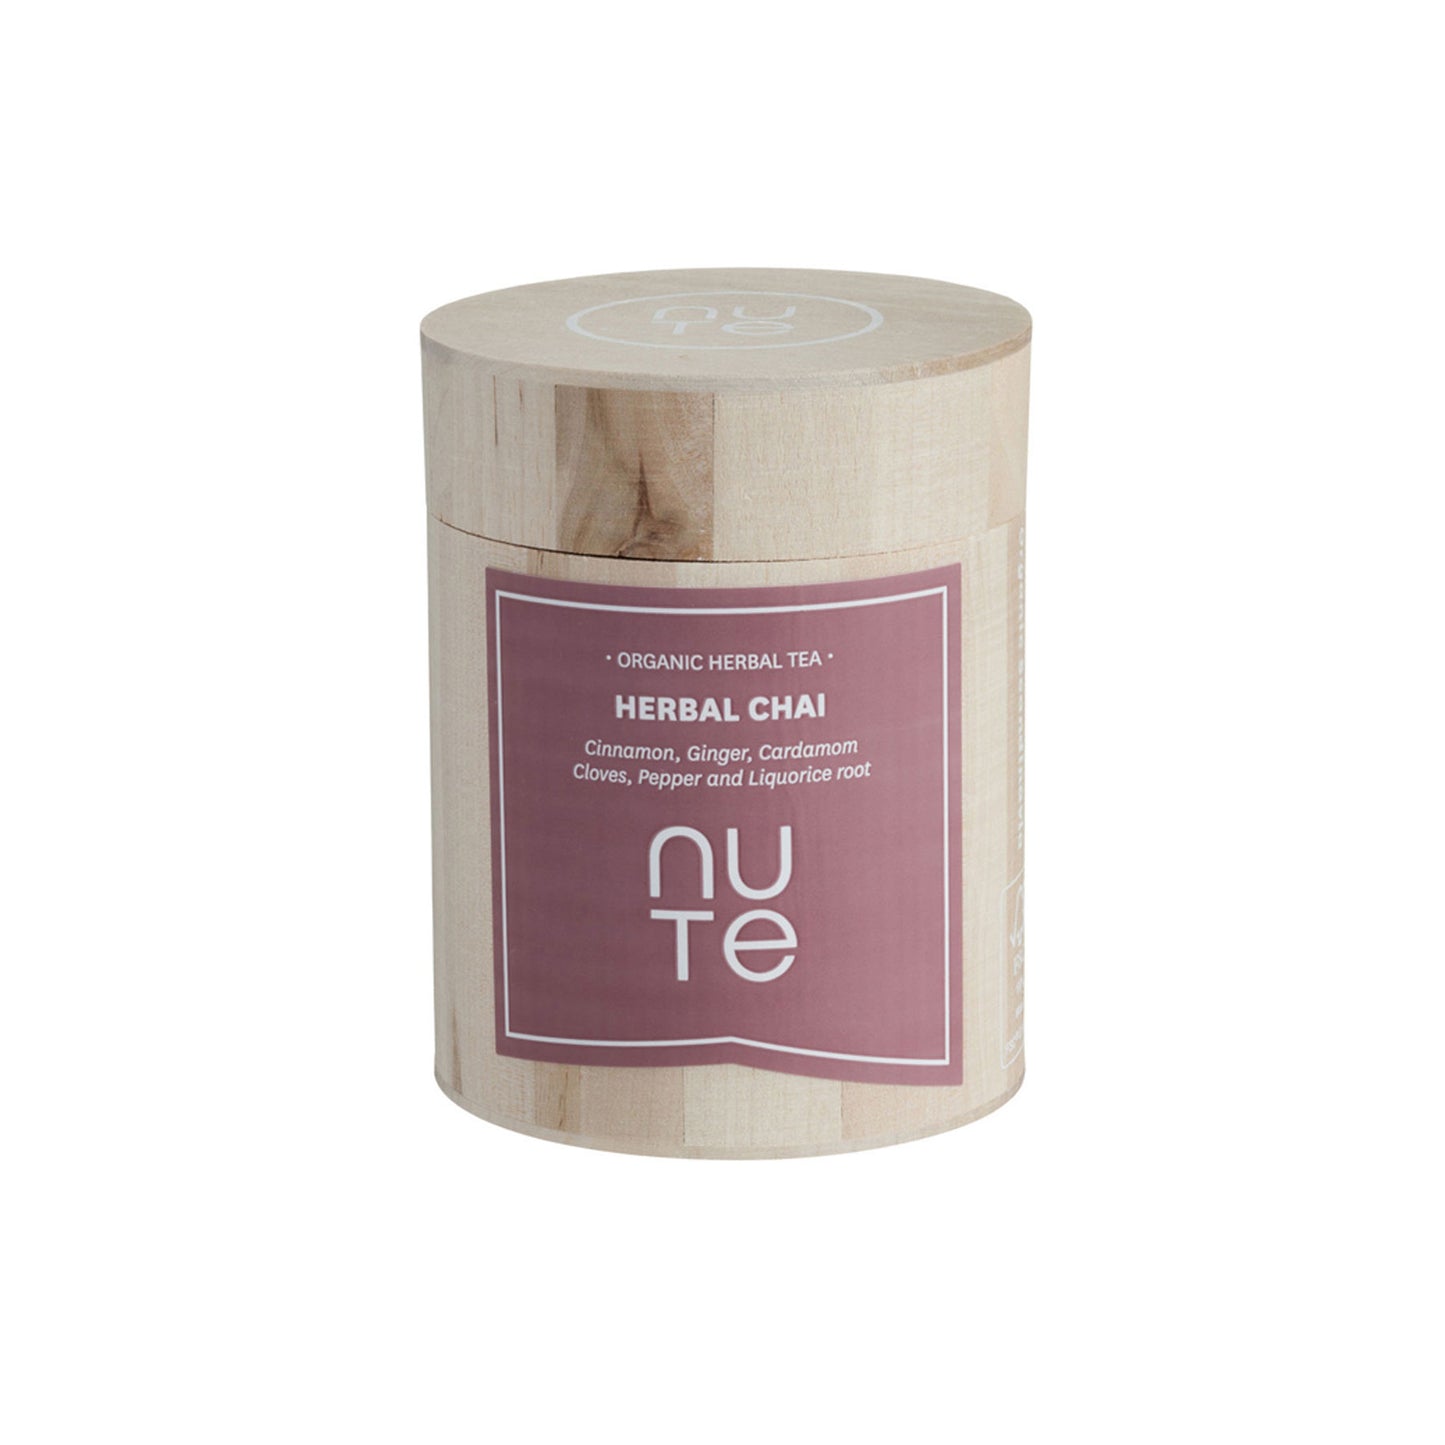 NUTE Herbal Chai Organic - 100g - dåse